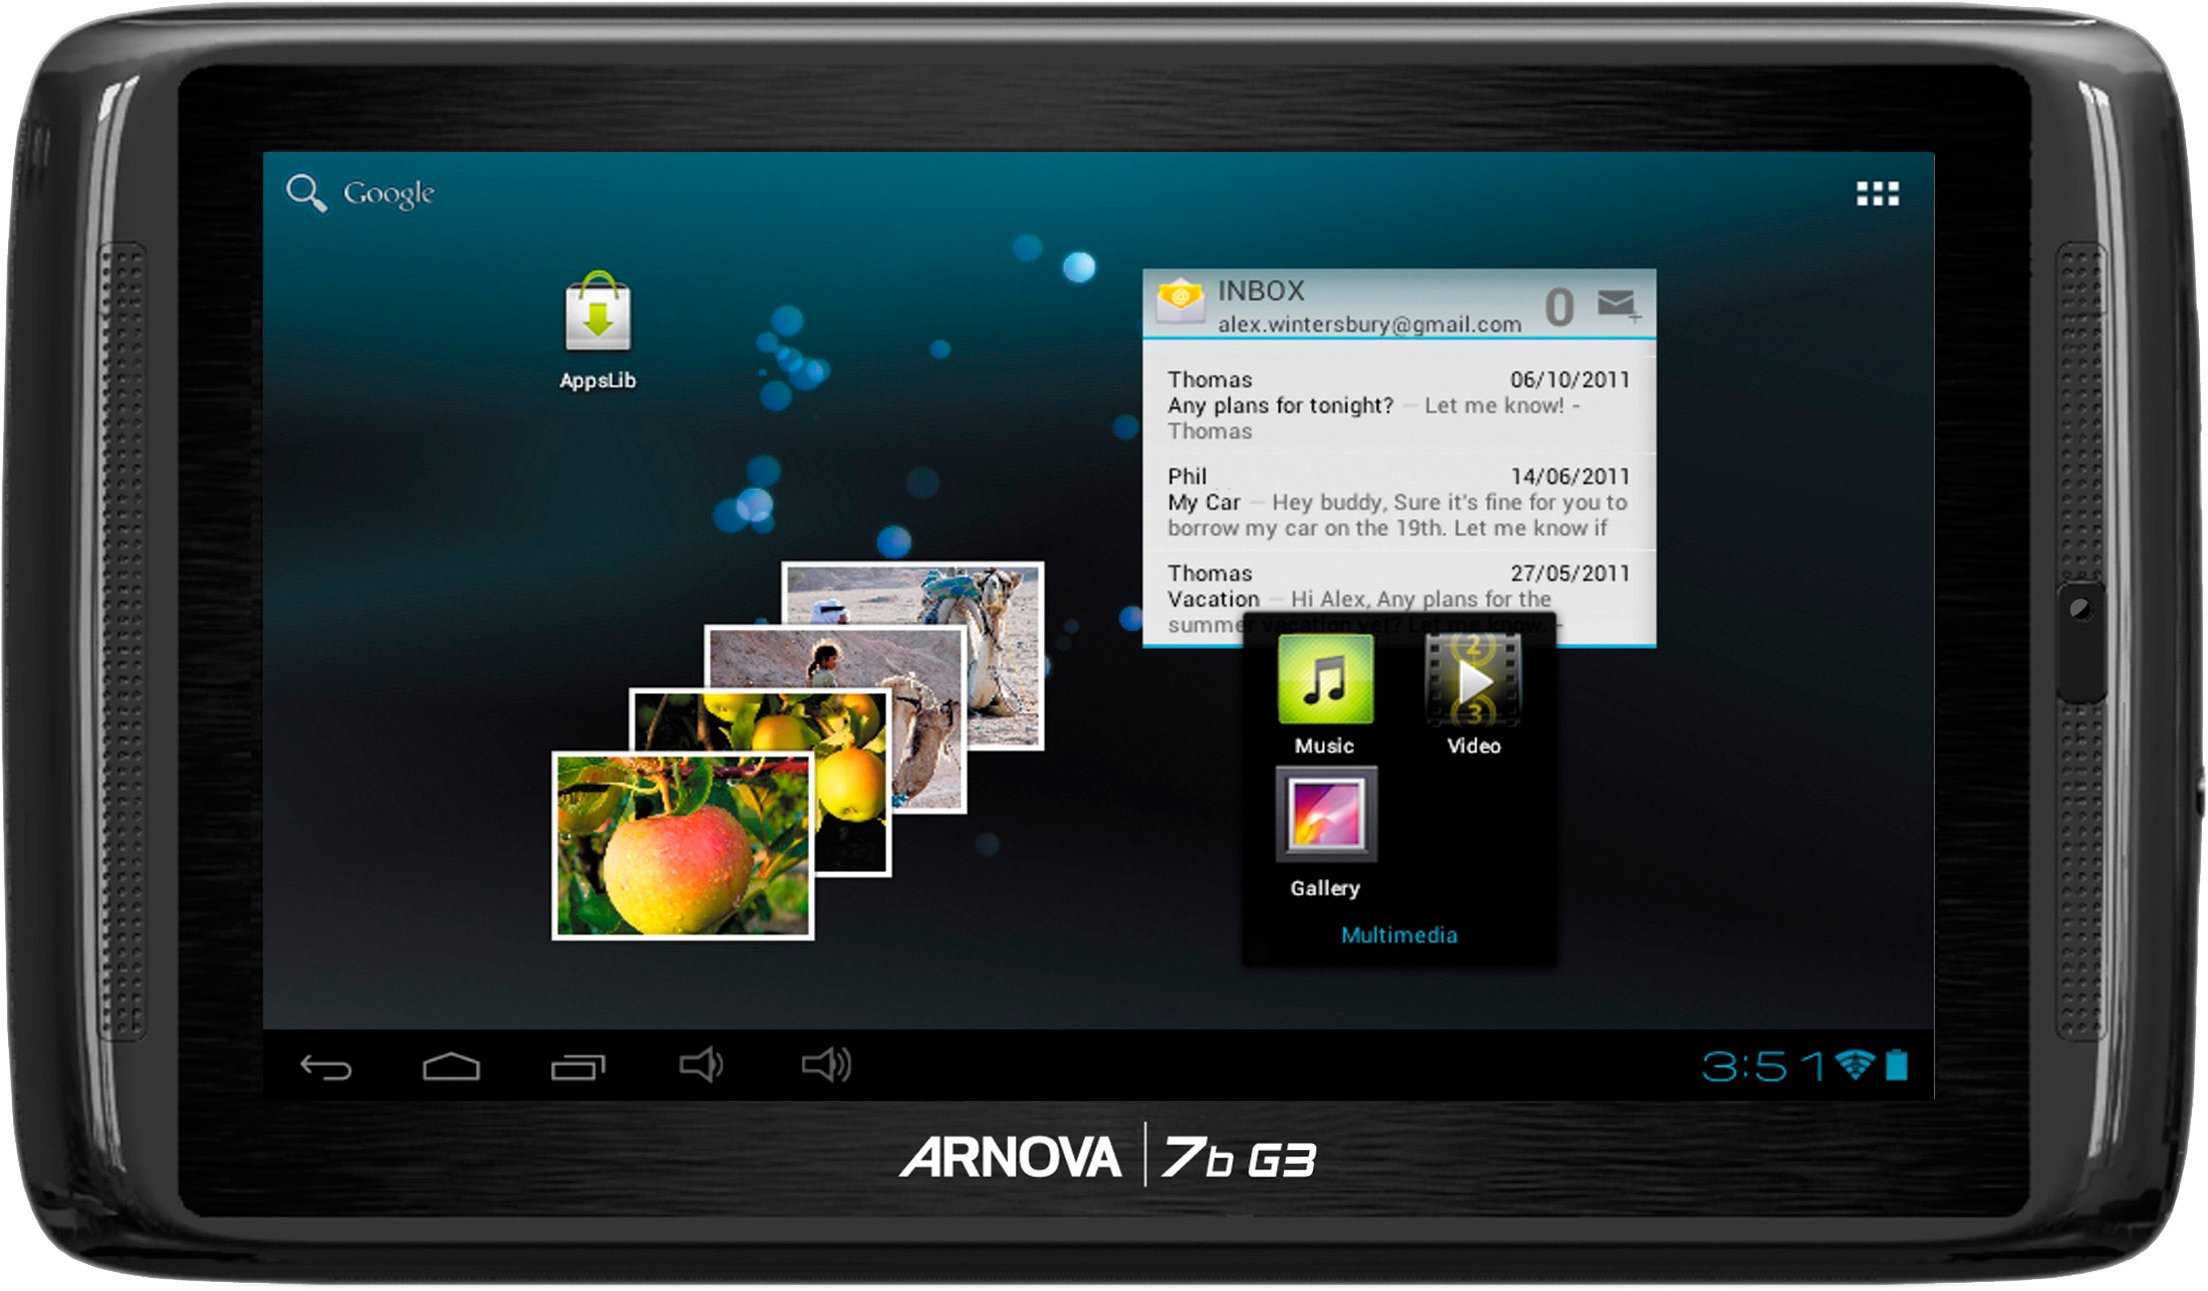 Archos arnova 7c g2 4gb (черный) - купить , скидки, цена, отзывы, обзор, характеристики - планшеты